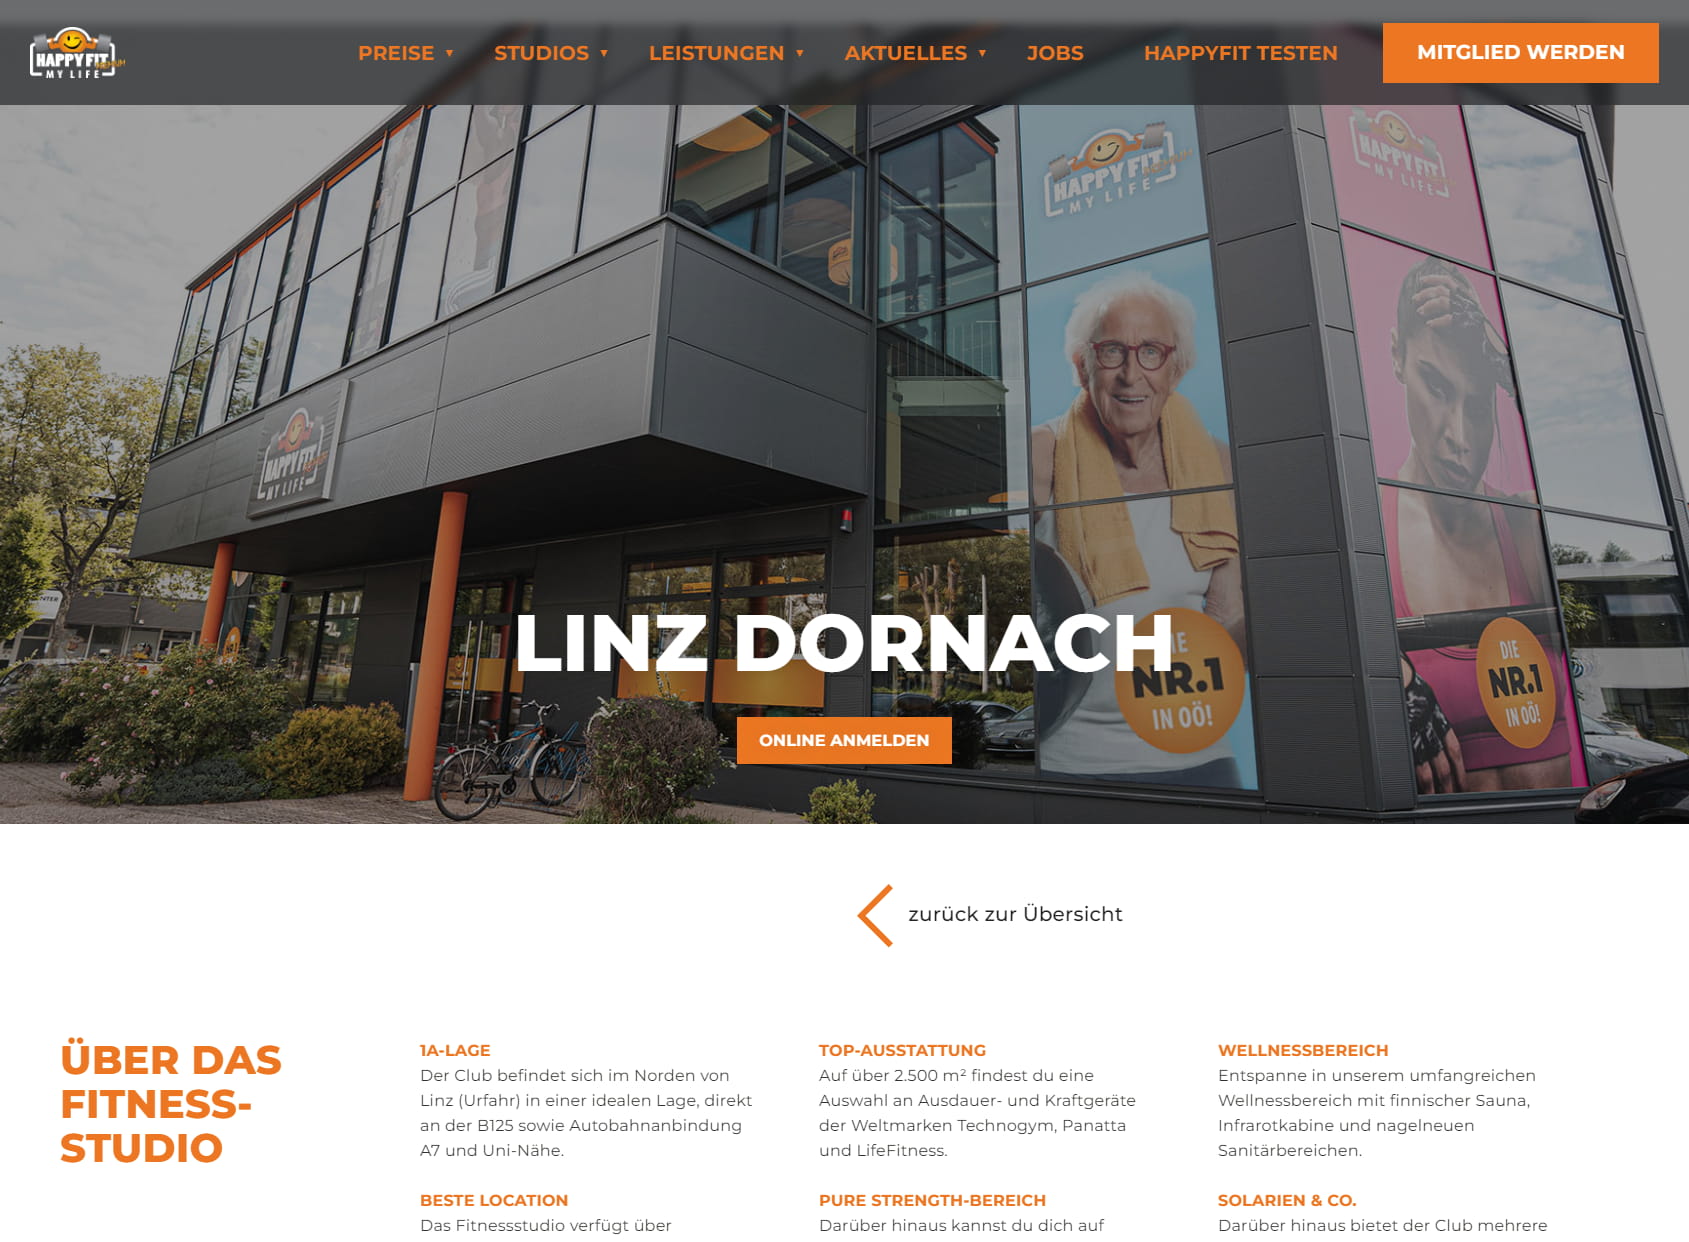 HappyFit Fitnessstudio Linz Dornach | Urfahr